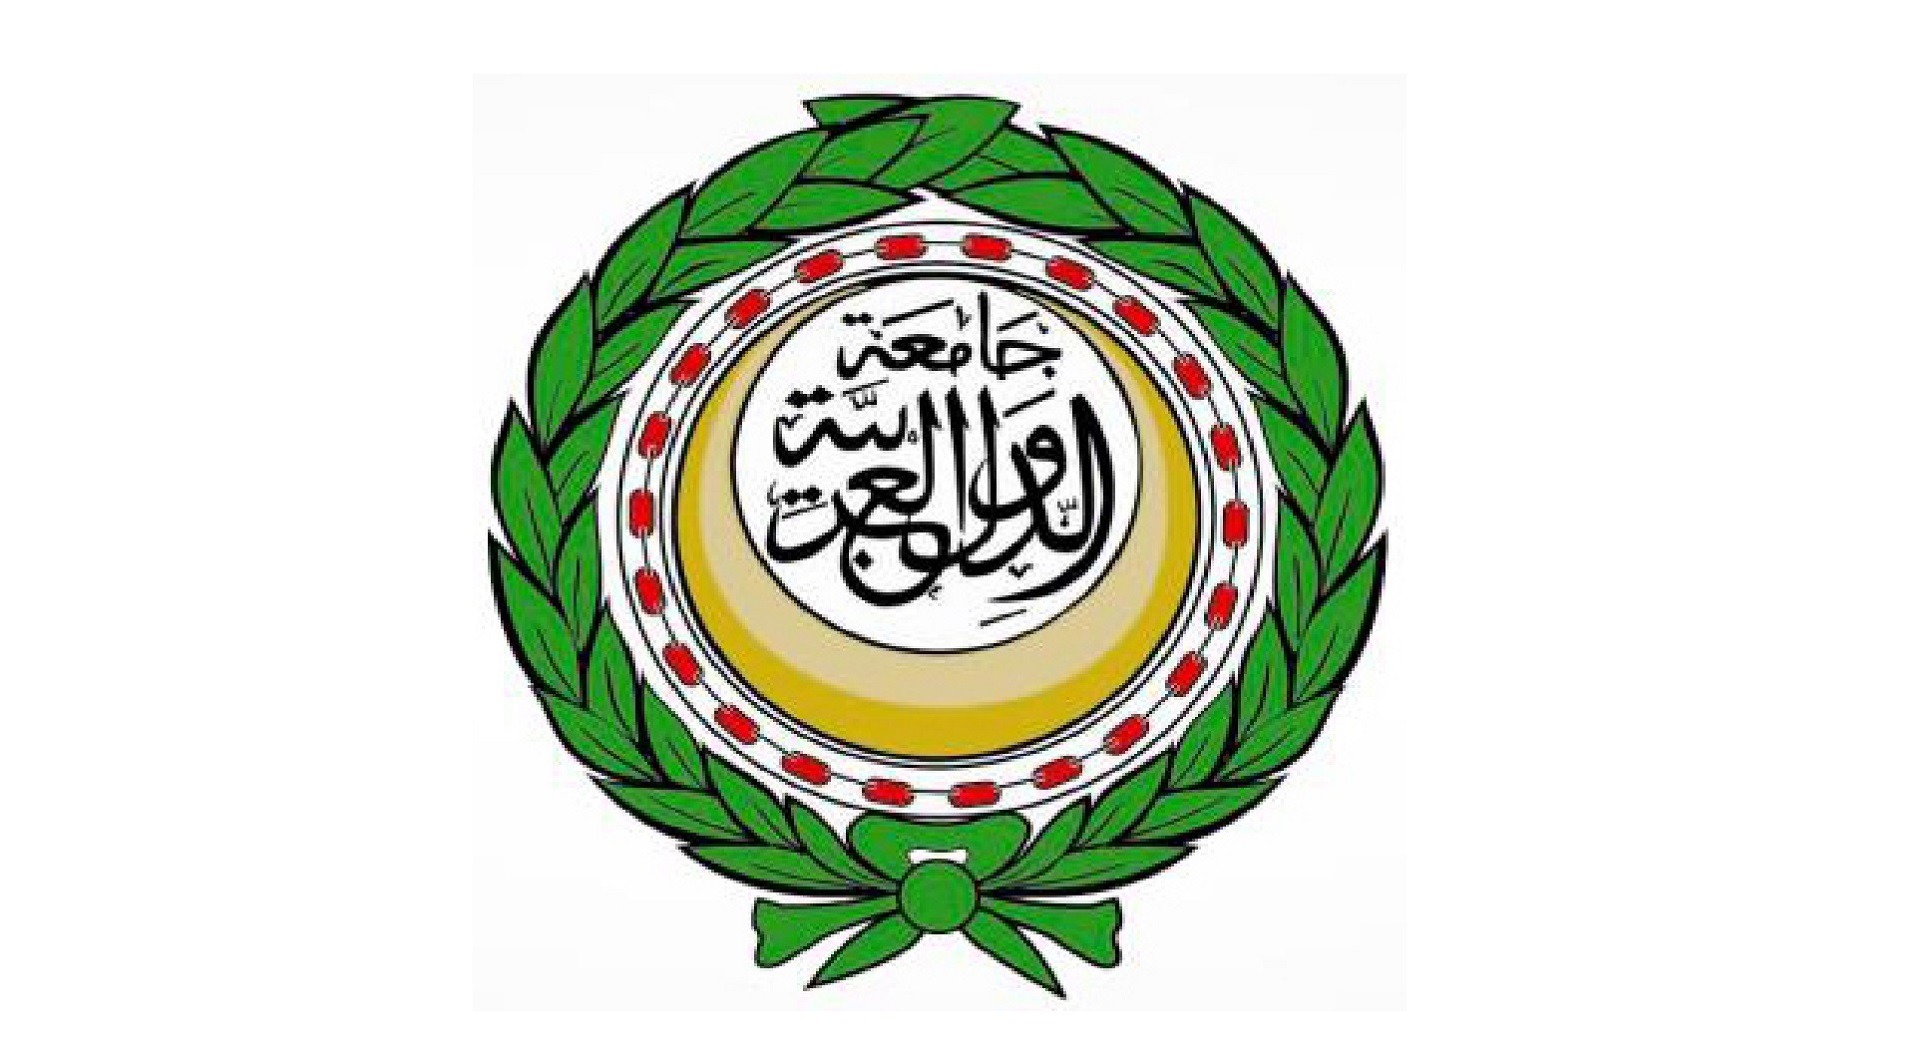 الجامعة العربية تدين اعتداء الاحتلال على مؤسسات العمل المدني الفلسطيني                                                                                                                                                                                    